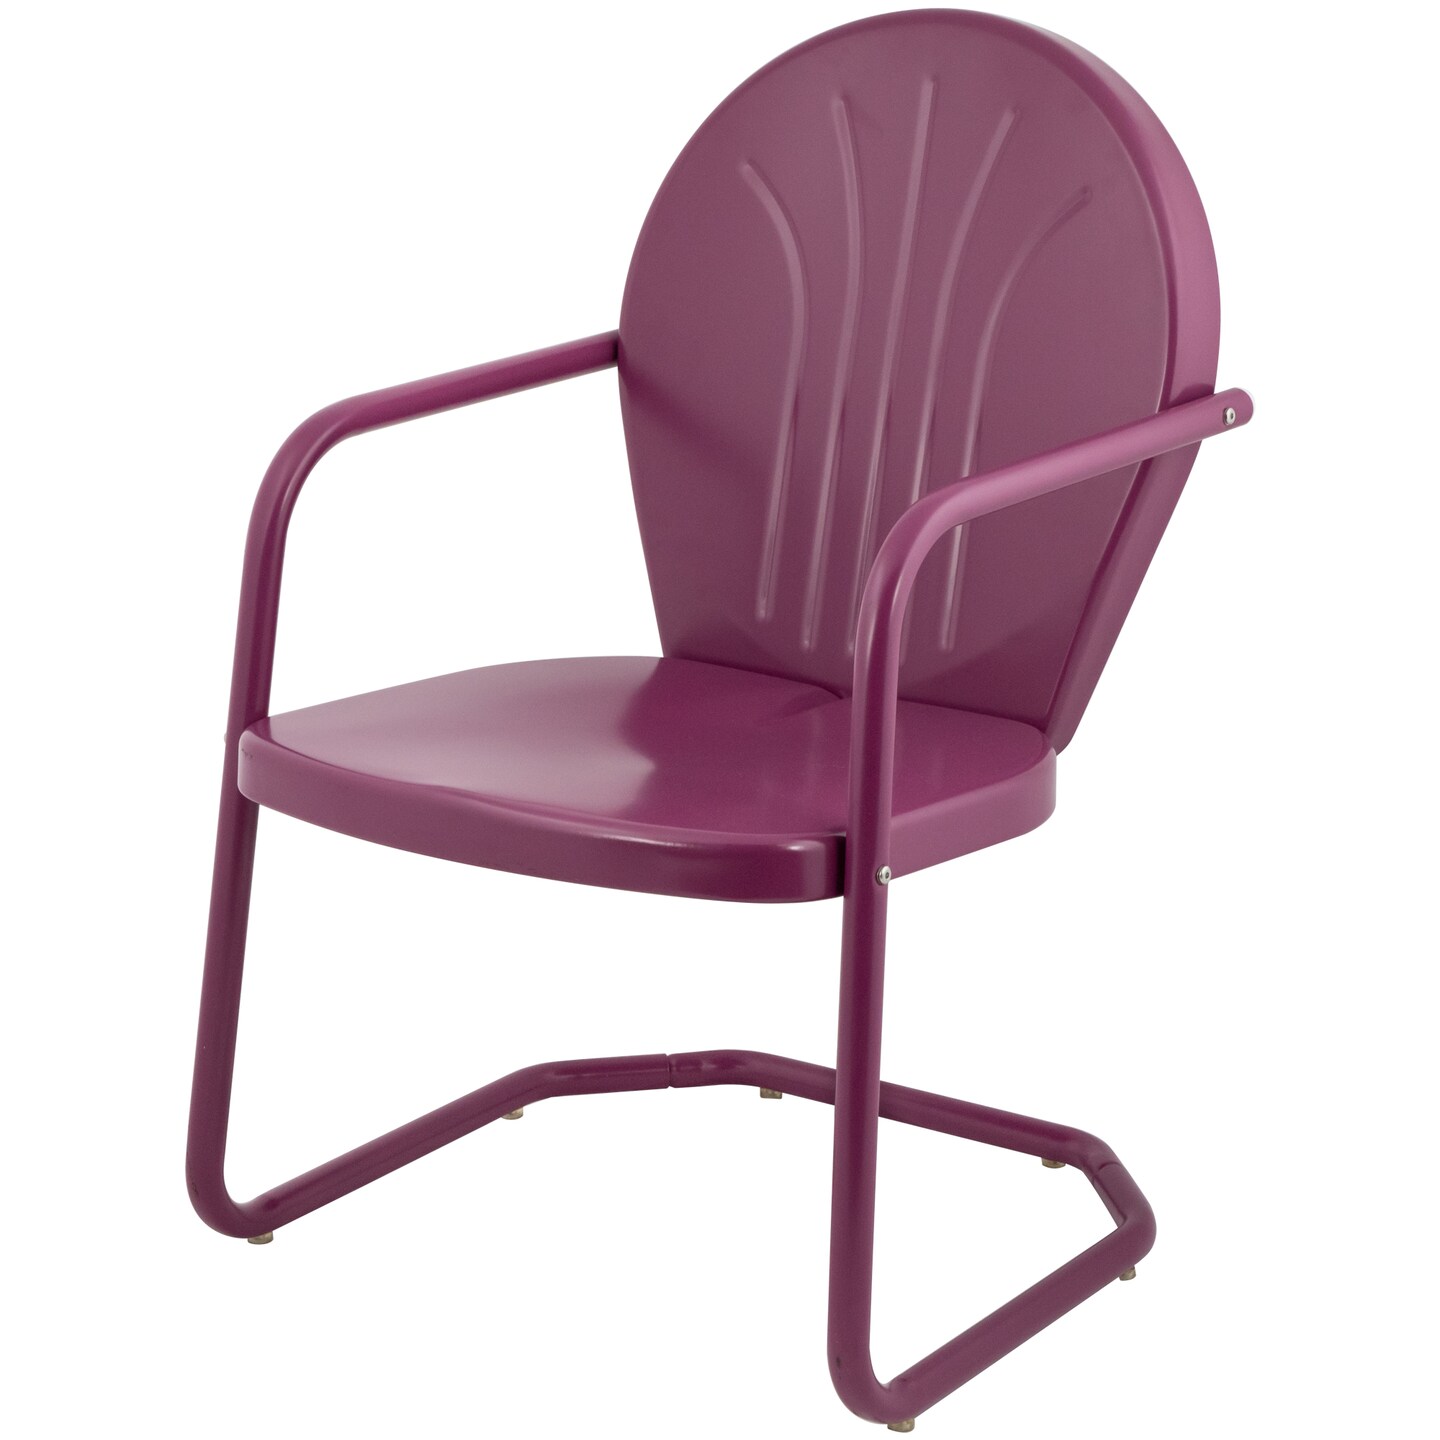 Northlight 34-Inch Outdoor Retro Tulip Armchair, Purple